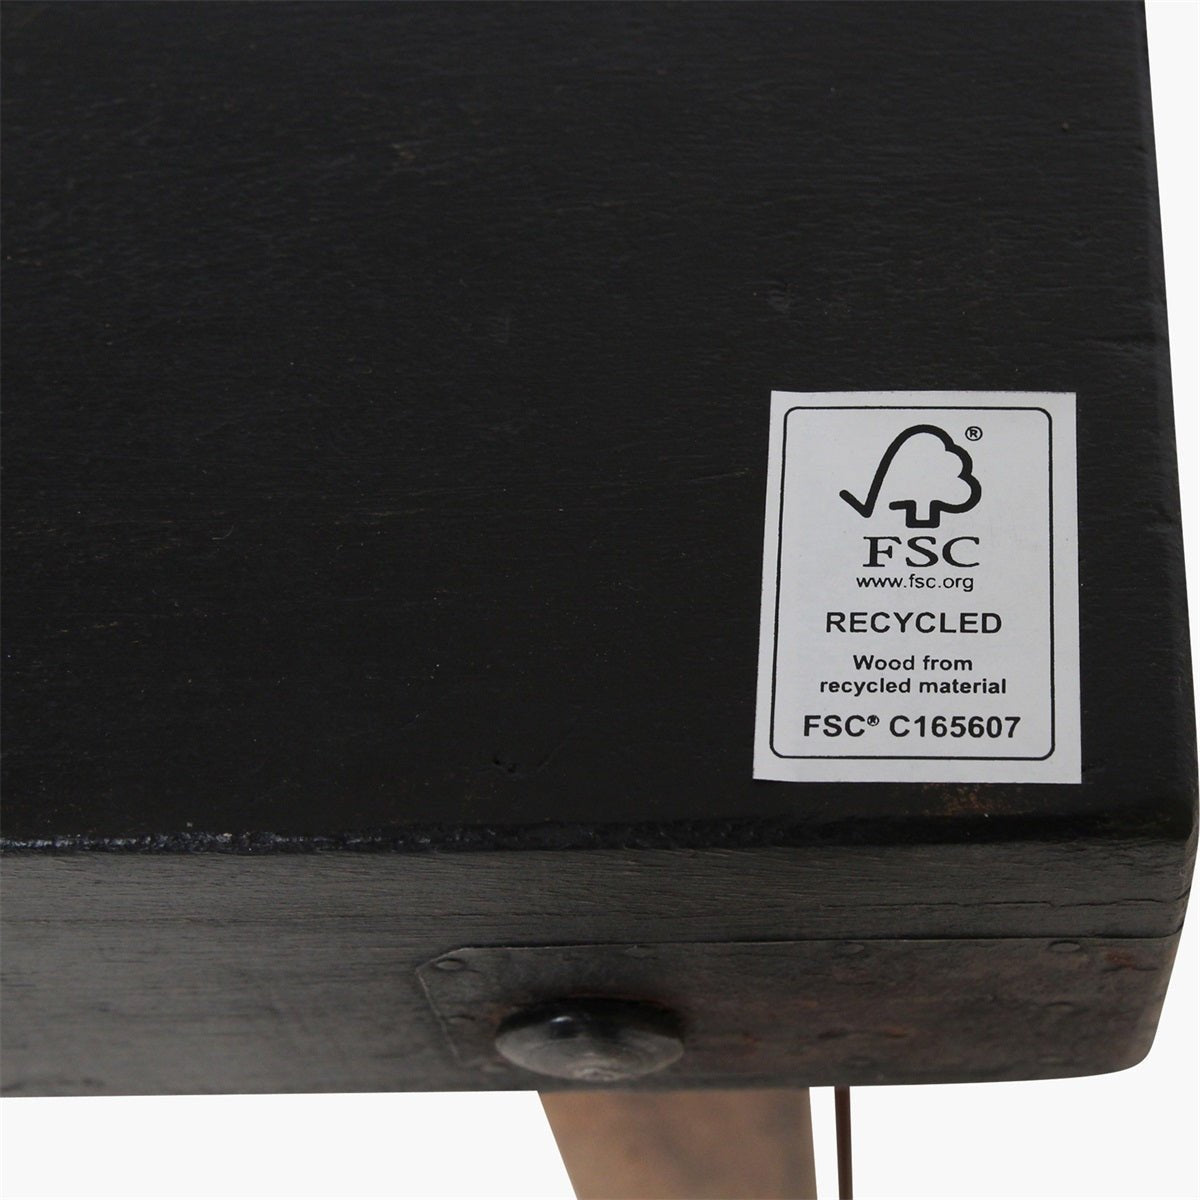 Rustikální konzolový stolek VINTAGE BLACK - CO.DE Concept